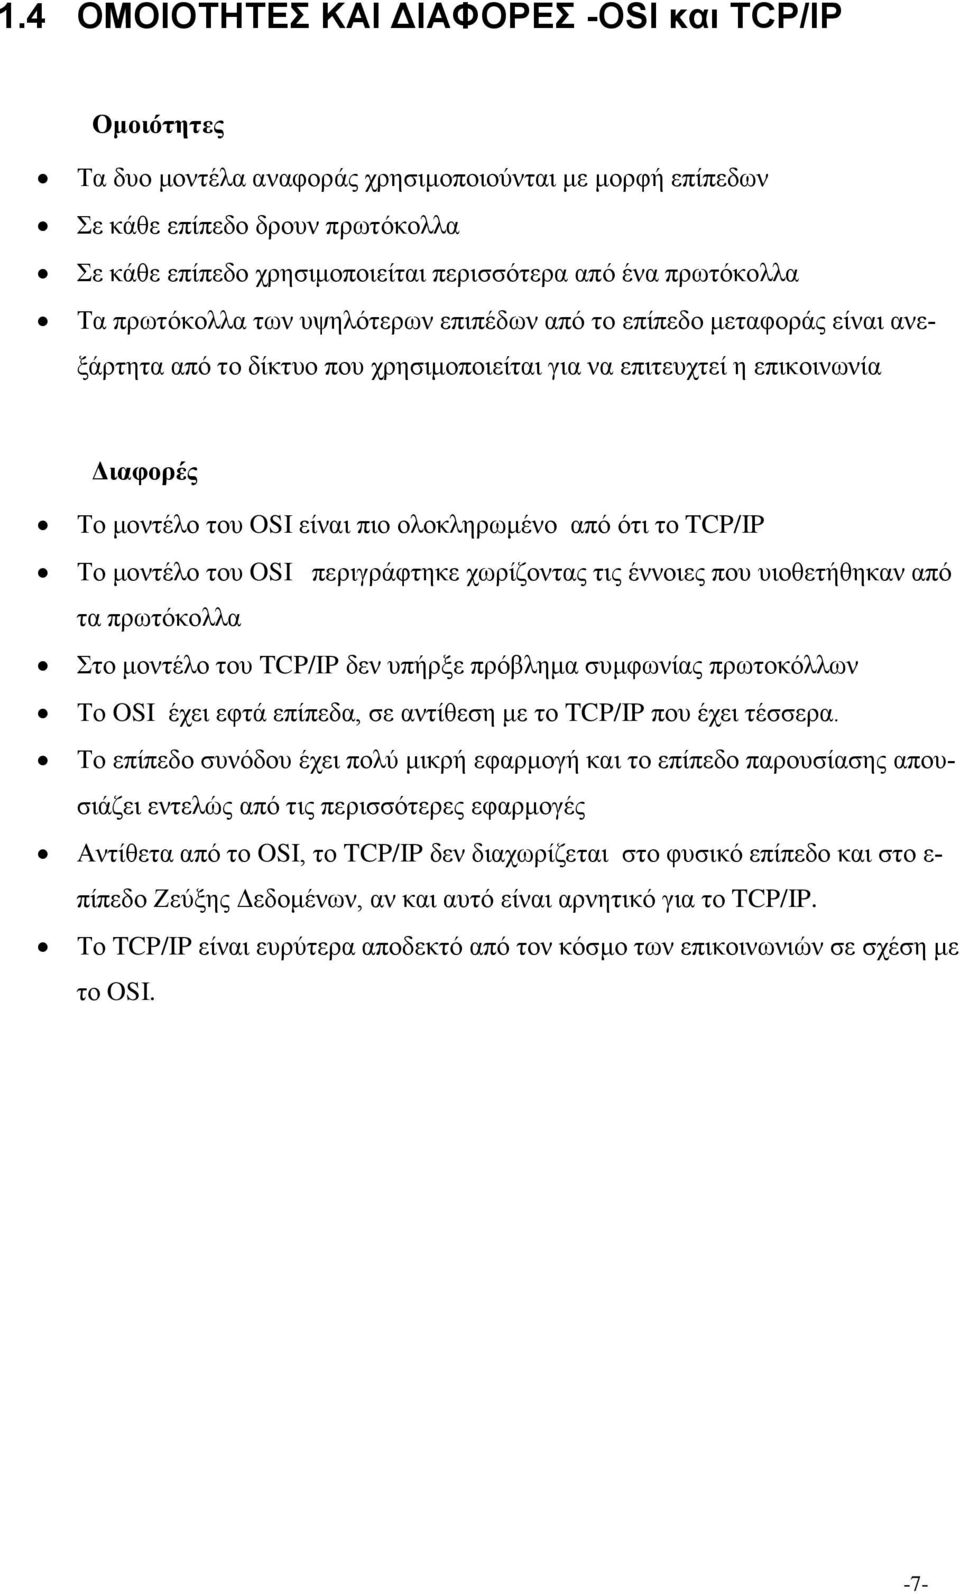 ολοκληρωμένο από ότι το TCP/IP Το μοντέλο του OSI περιγράφτηκε χωρίζοντας τις έννοιες που υιοθετήθηκαν από τα πρωτόκολλα Στο μοντέλο του TCP/IP δεν υπήρξε πρόβλημα συμφωνίας πρωτοκόλλων Το OSI έχει